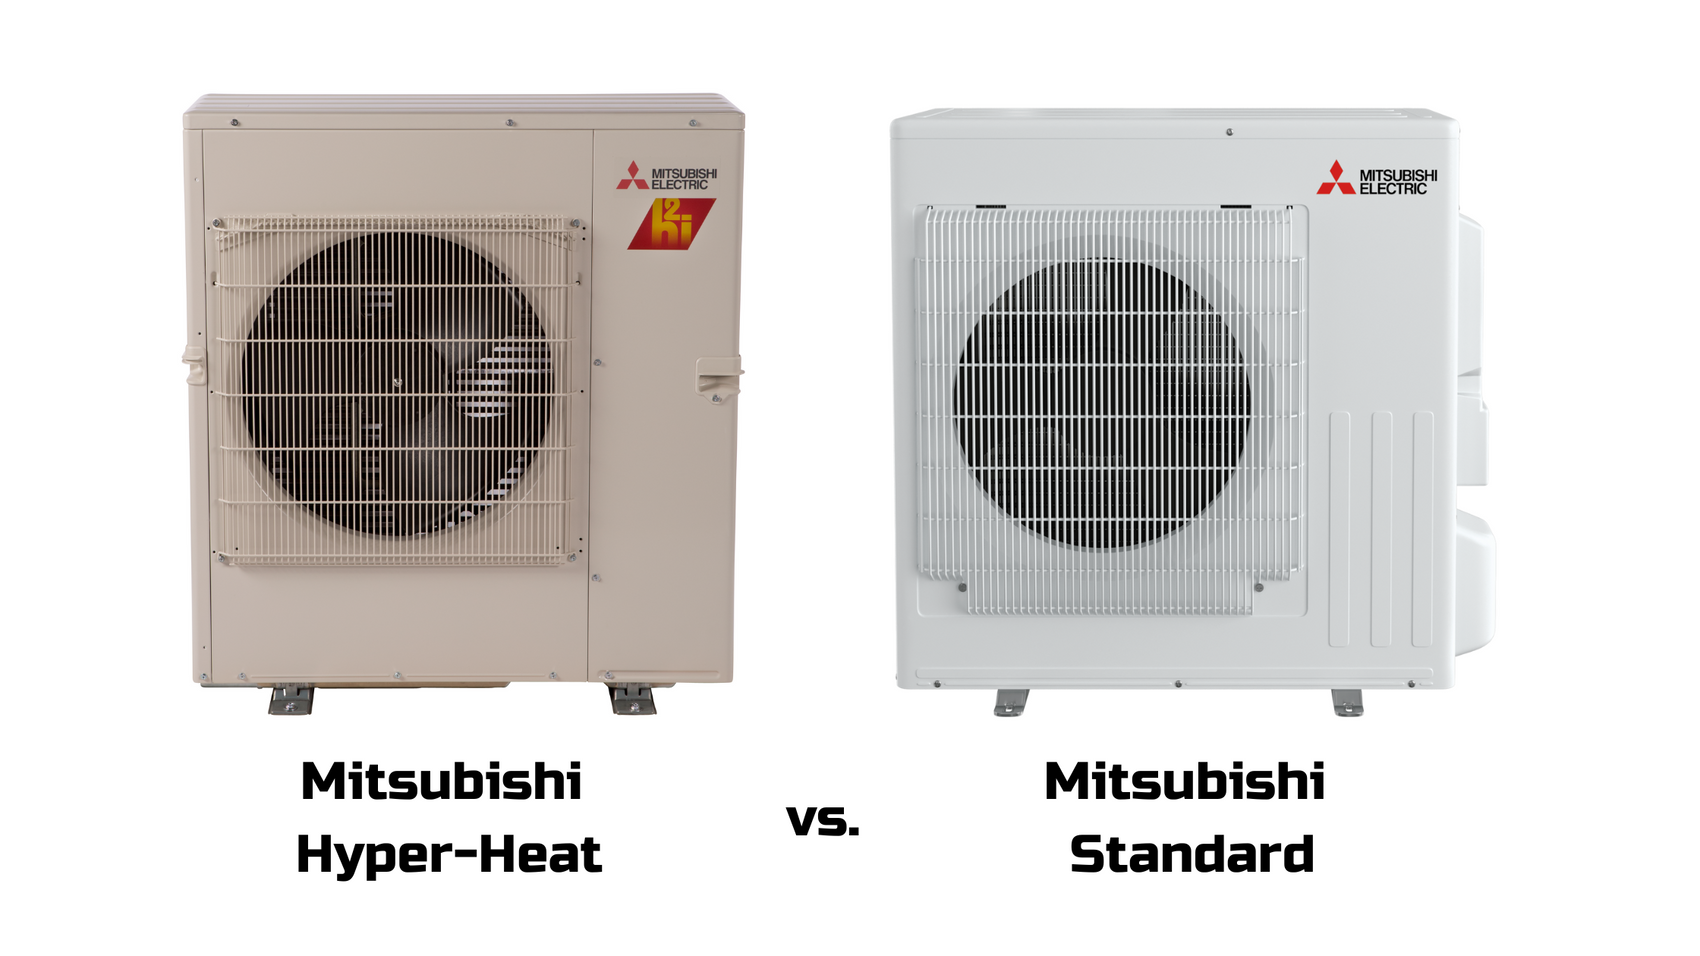 Mitsubishi Hyper Heat vs. Mitsubishi Standard Heat Pump: Which One Should I Choose?